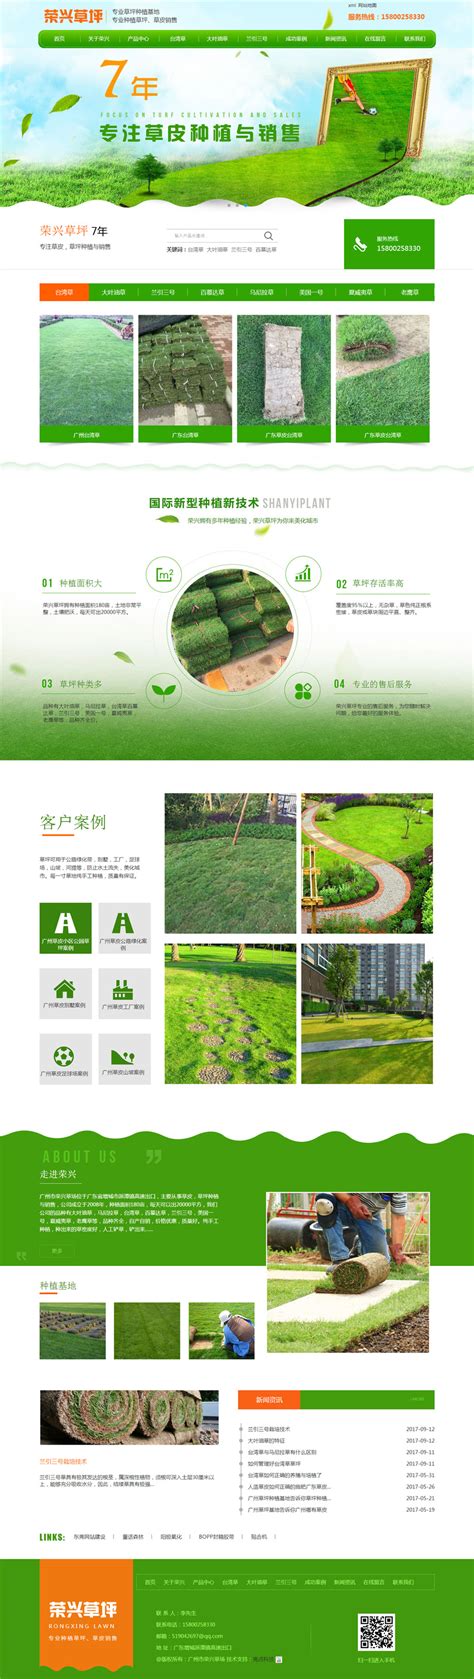 广州草皮种植基地告诉你小区绿化草坪该如何修复_广州草皮种植基地,广 _广东省广州市钟亿绿化草皮种植基地